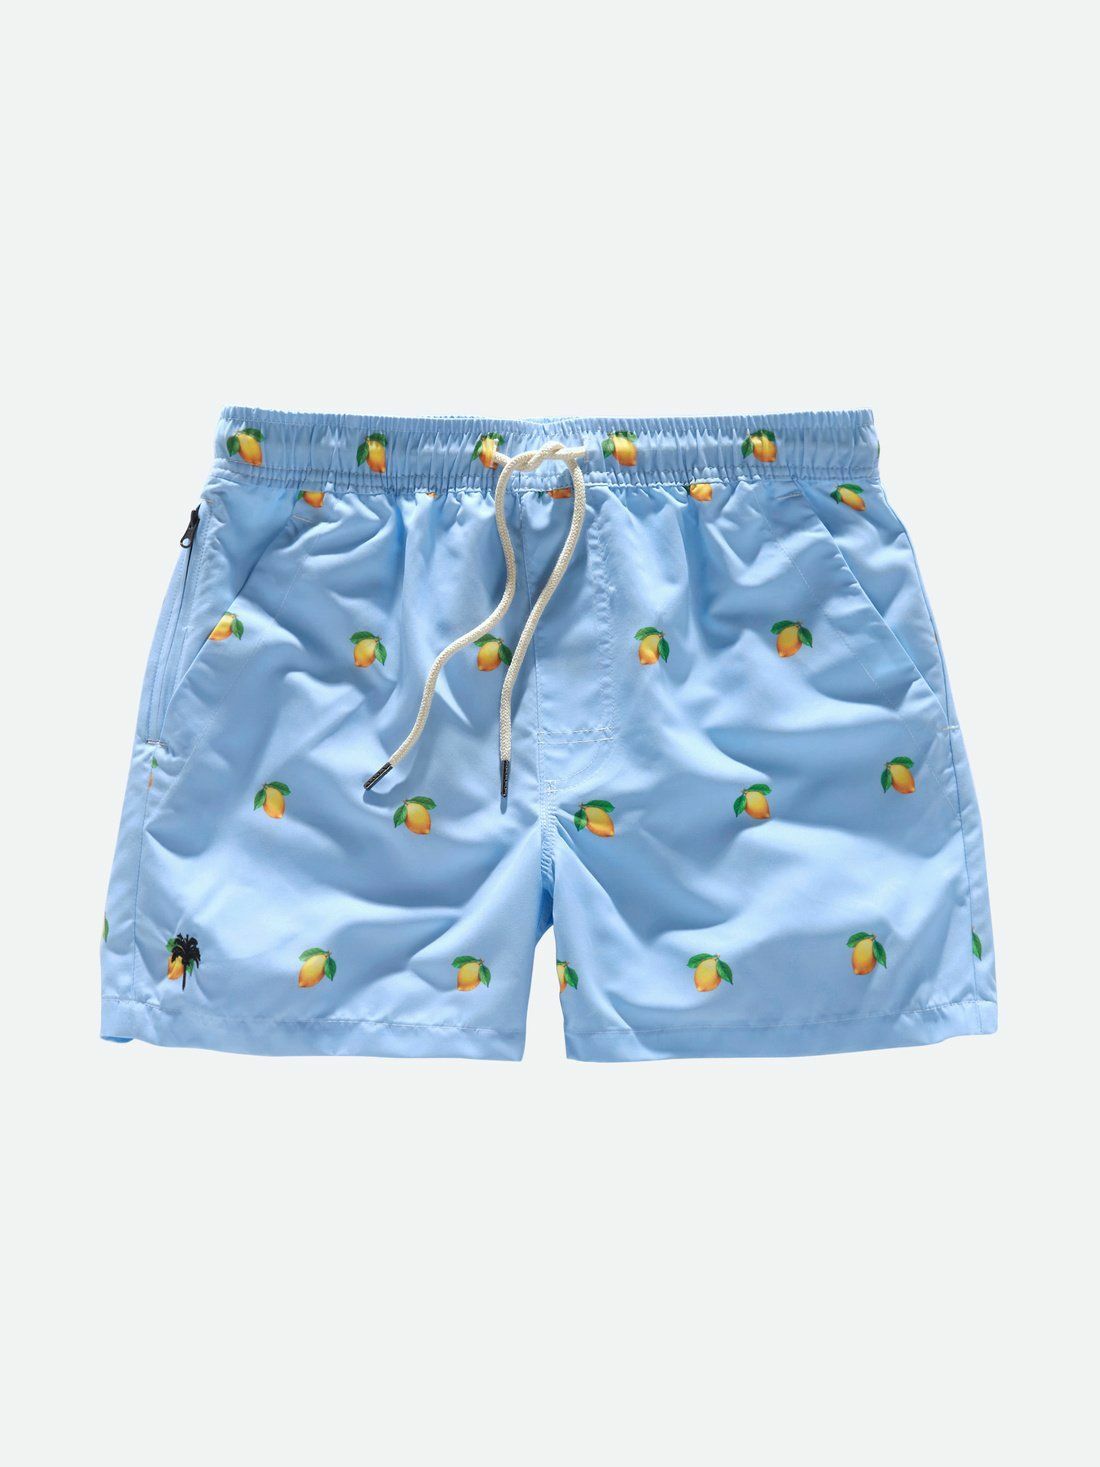 Prime Benadering Station OAS Blue Lemon Swimshort online kopen bij Boutique Domburg. 5001-165